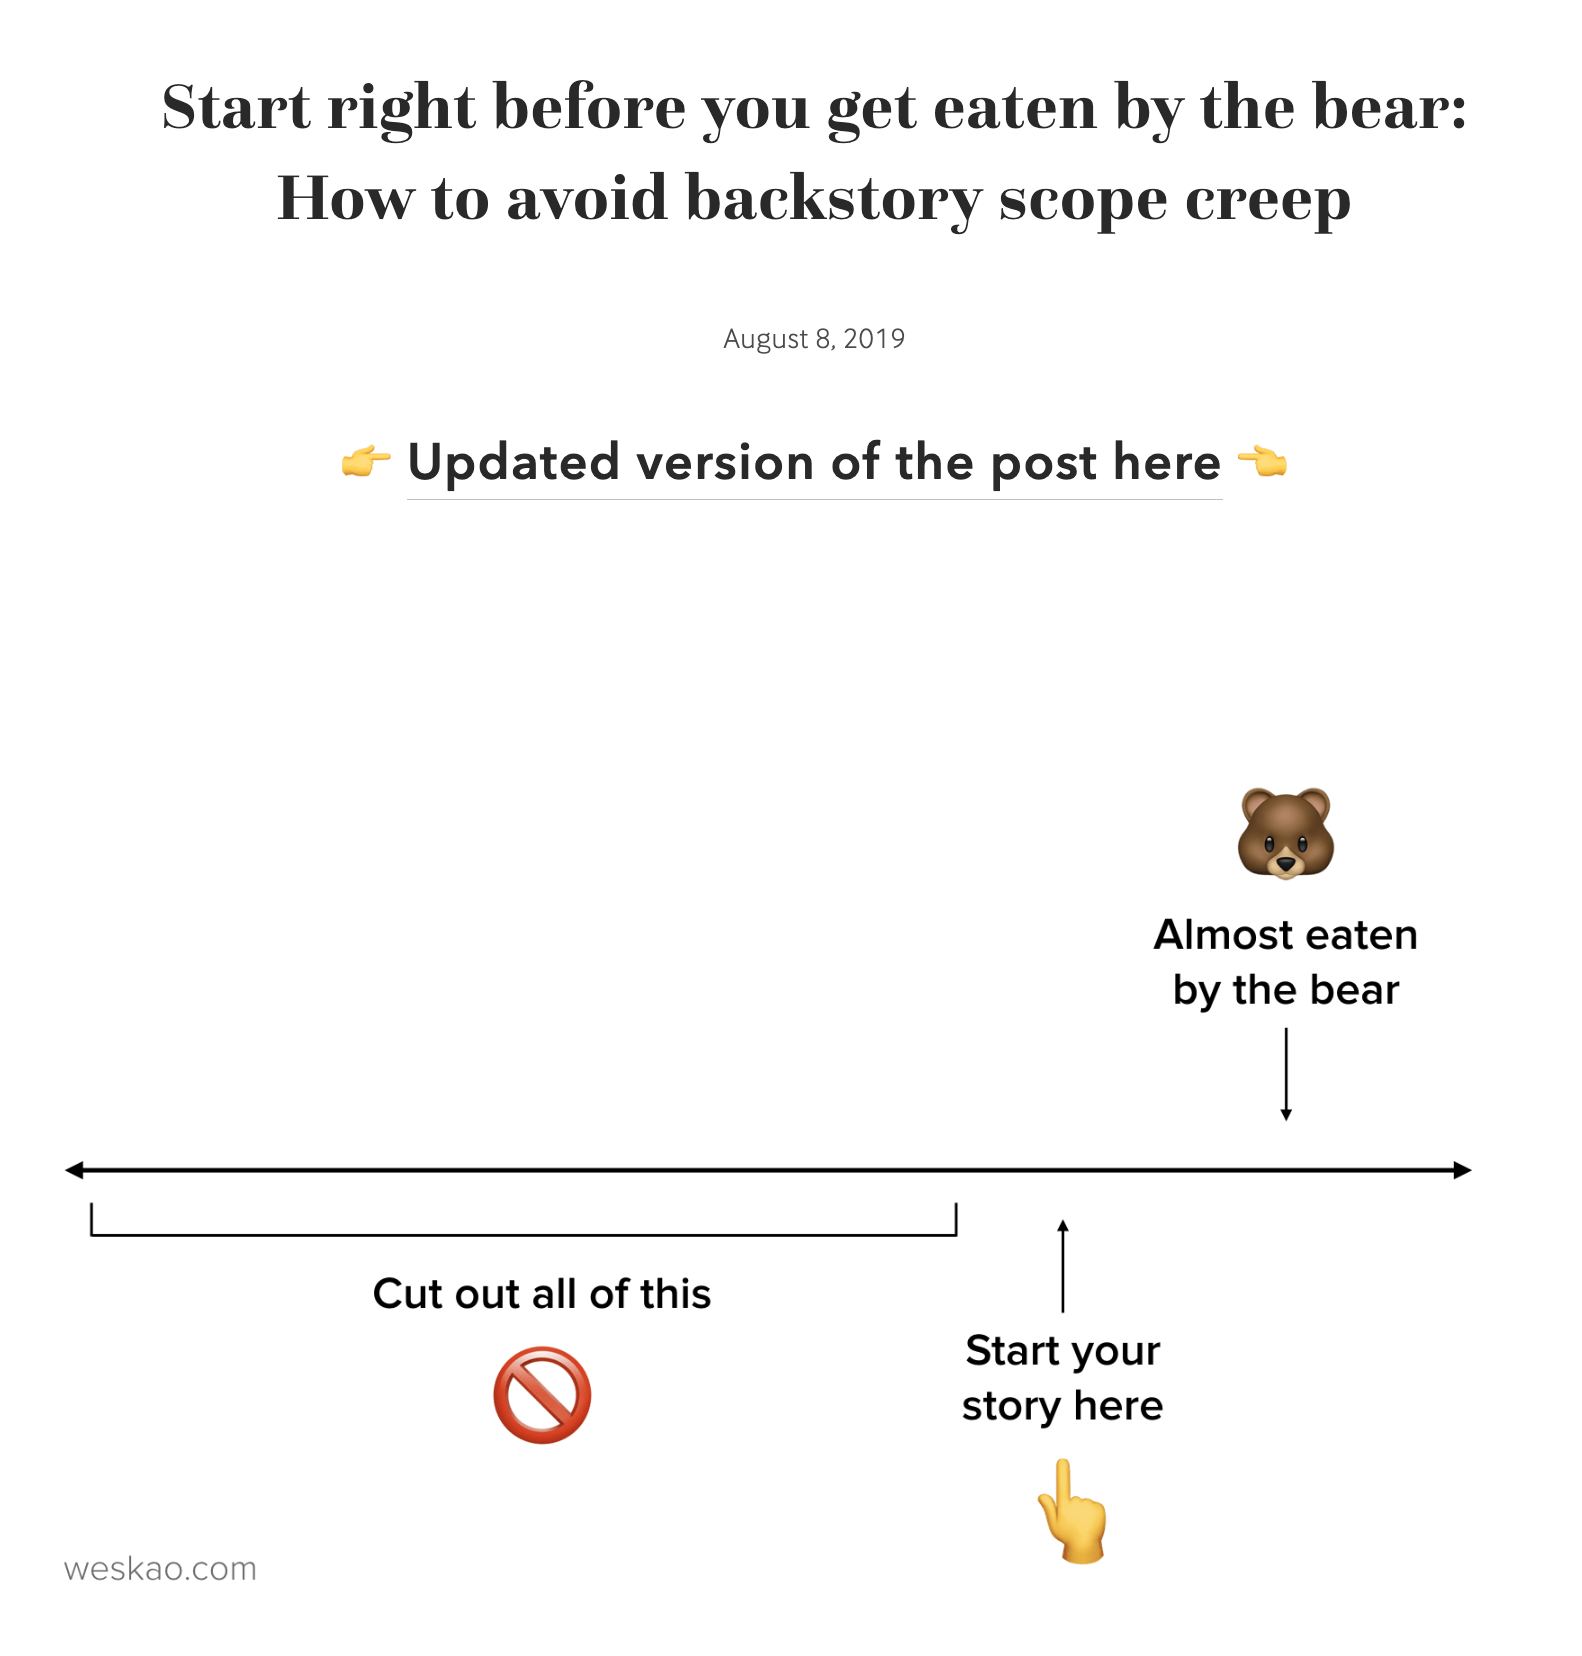  La analogía de Wes del "ataque del oso", de su entrada original del blog de 2019.